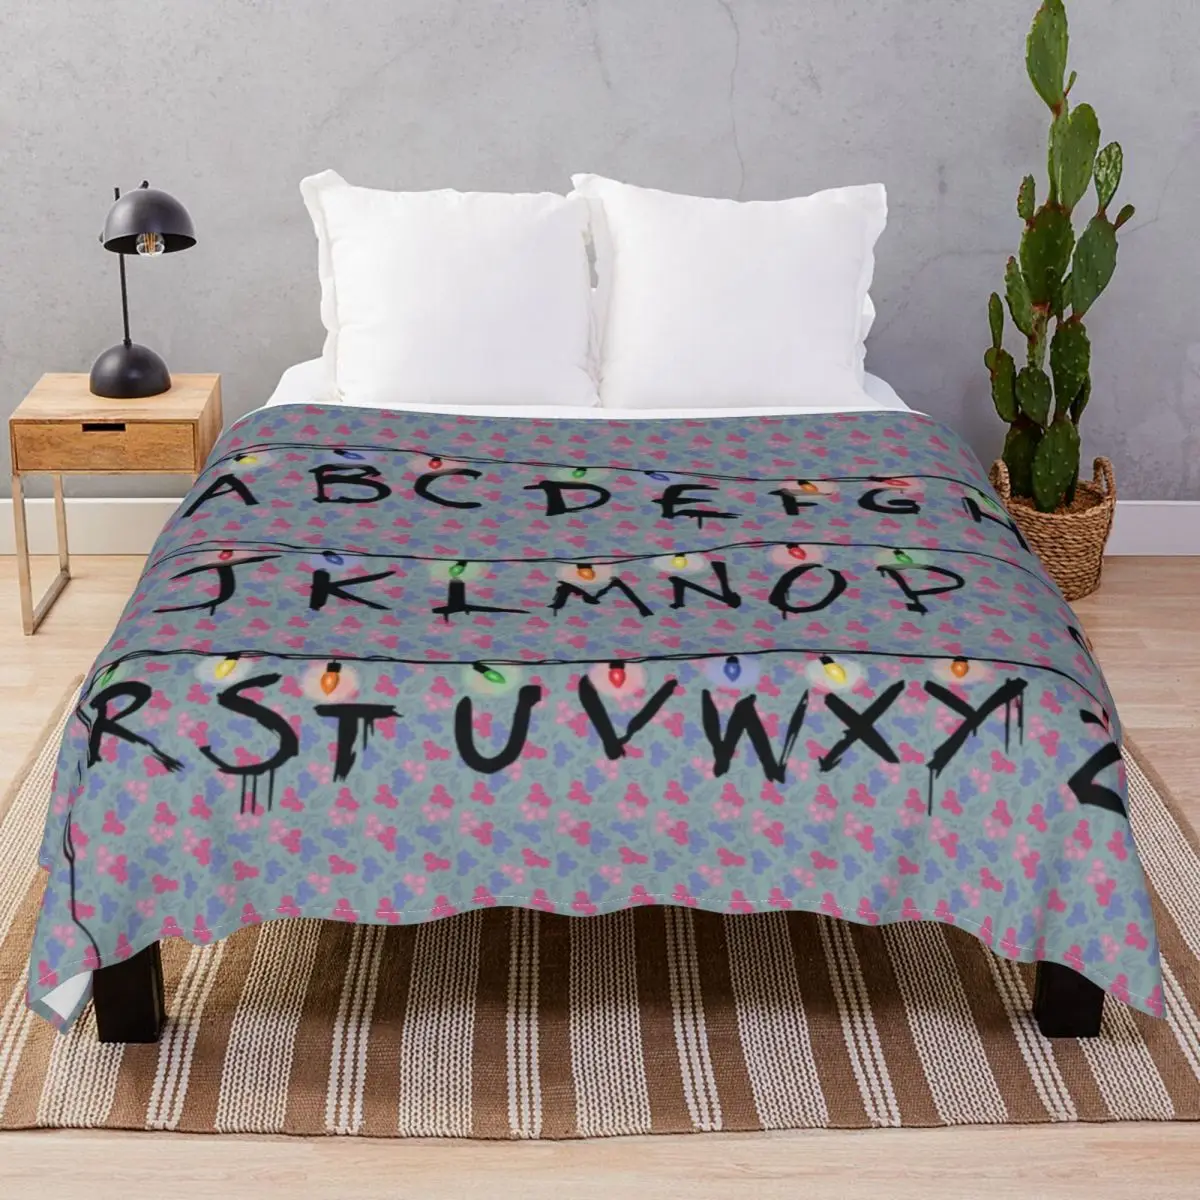 Stranger Things Alphabet Blankets Fleece Winter Super Soft Throw Blanket for Bed Sofa Travel Office